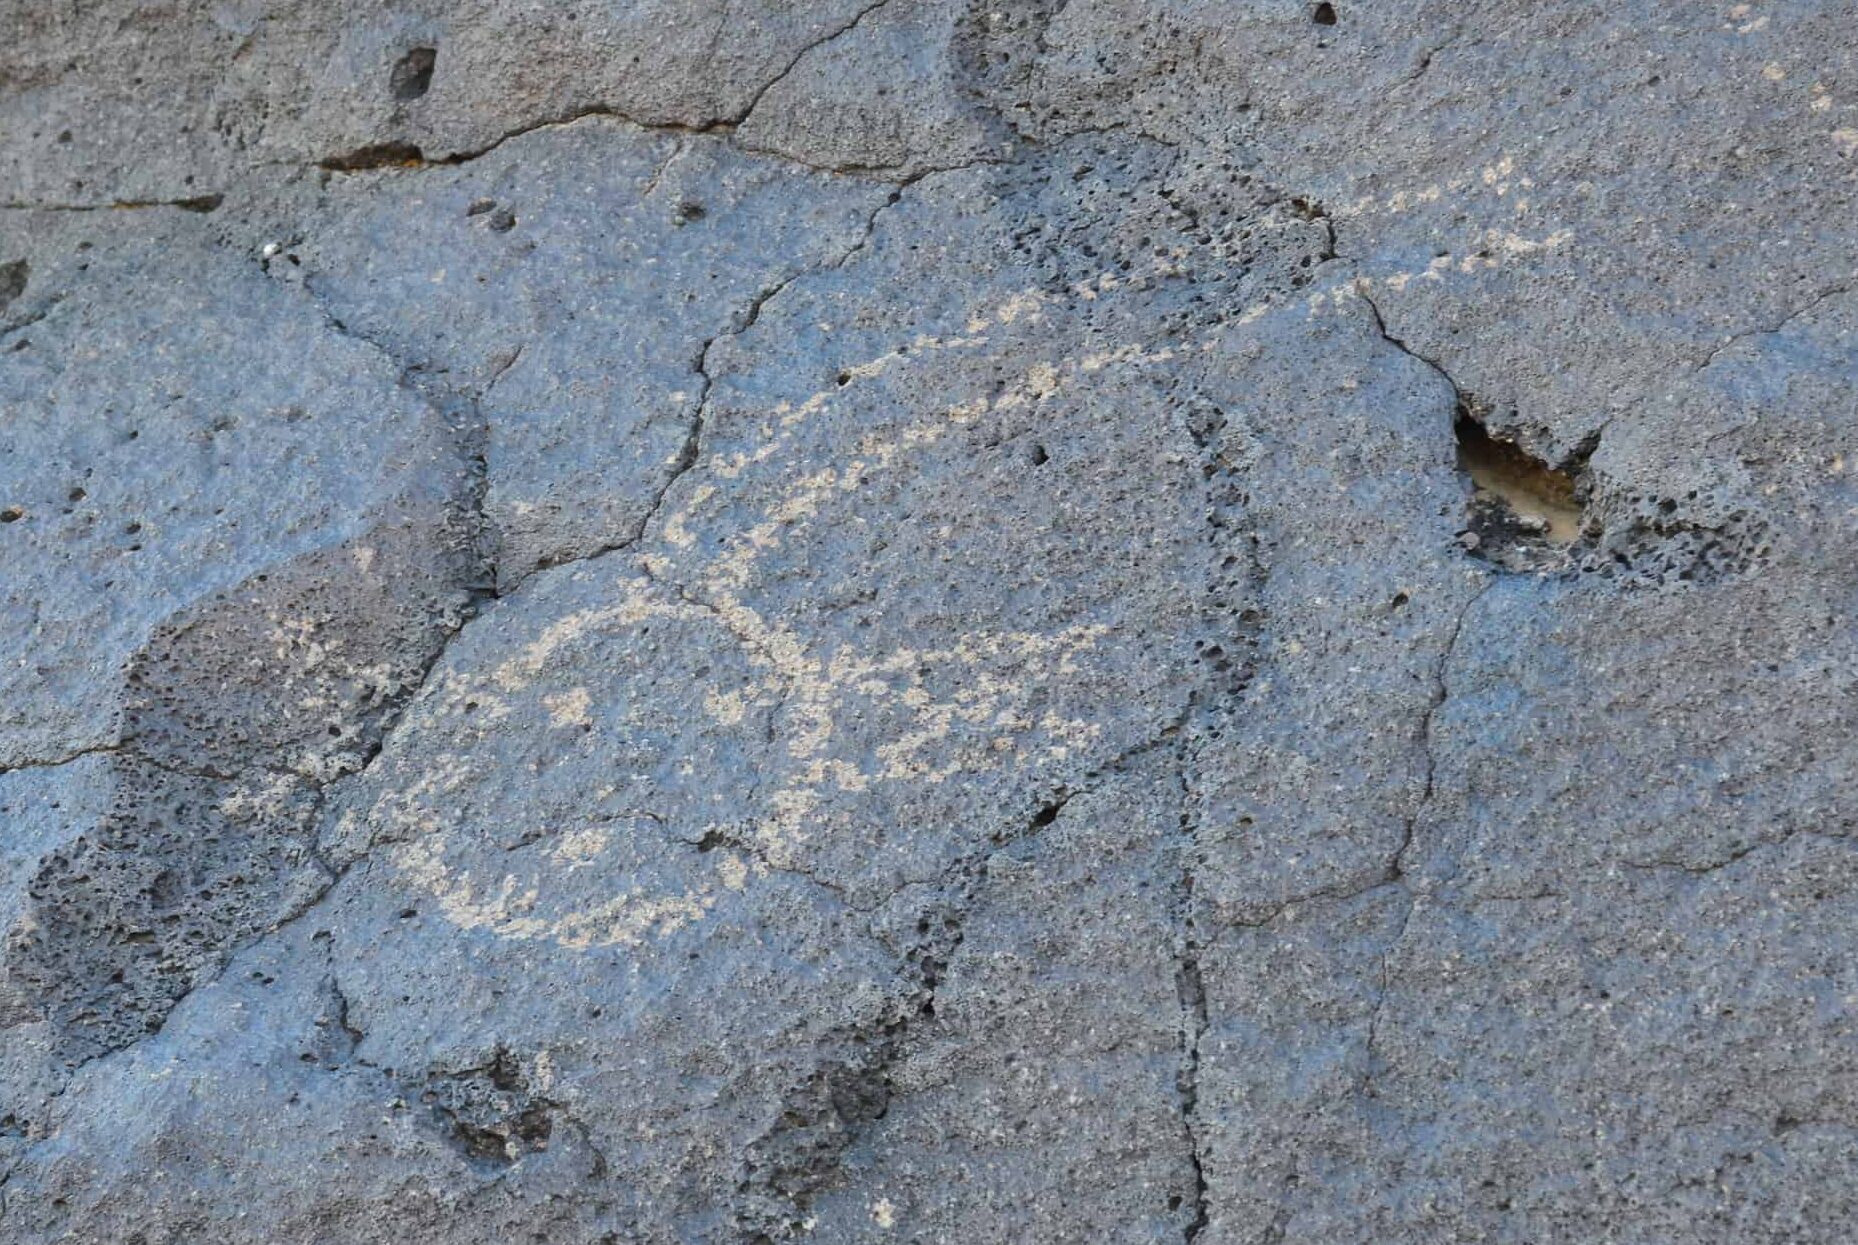 Petroglyph along Cliff Base Trail